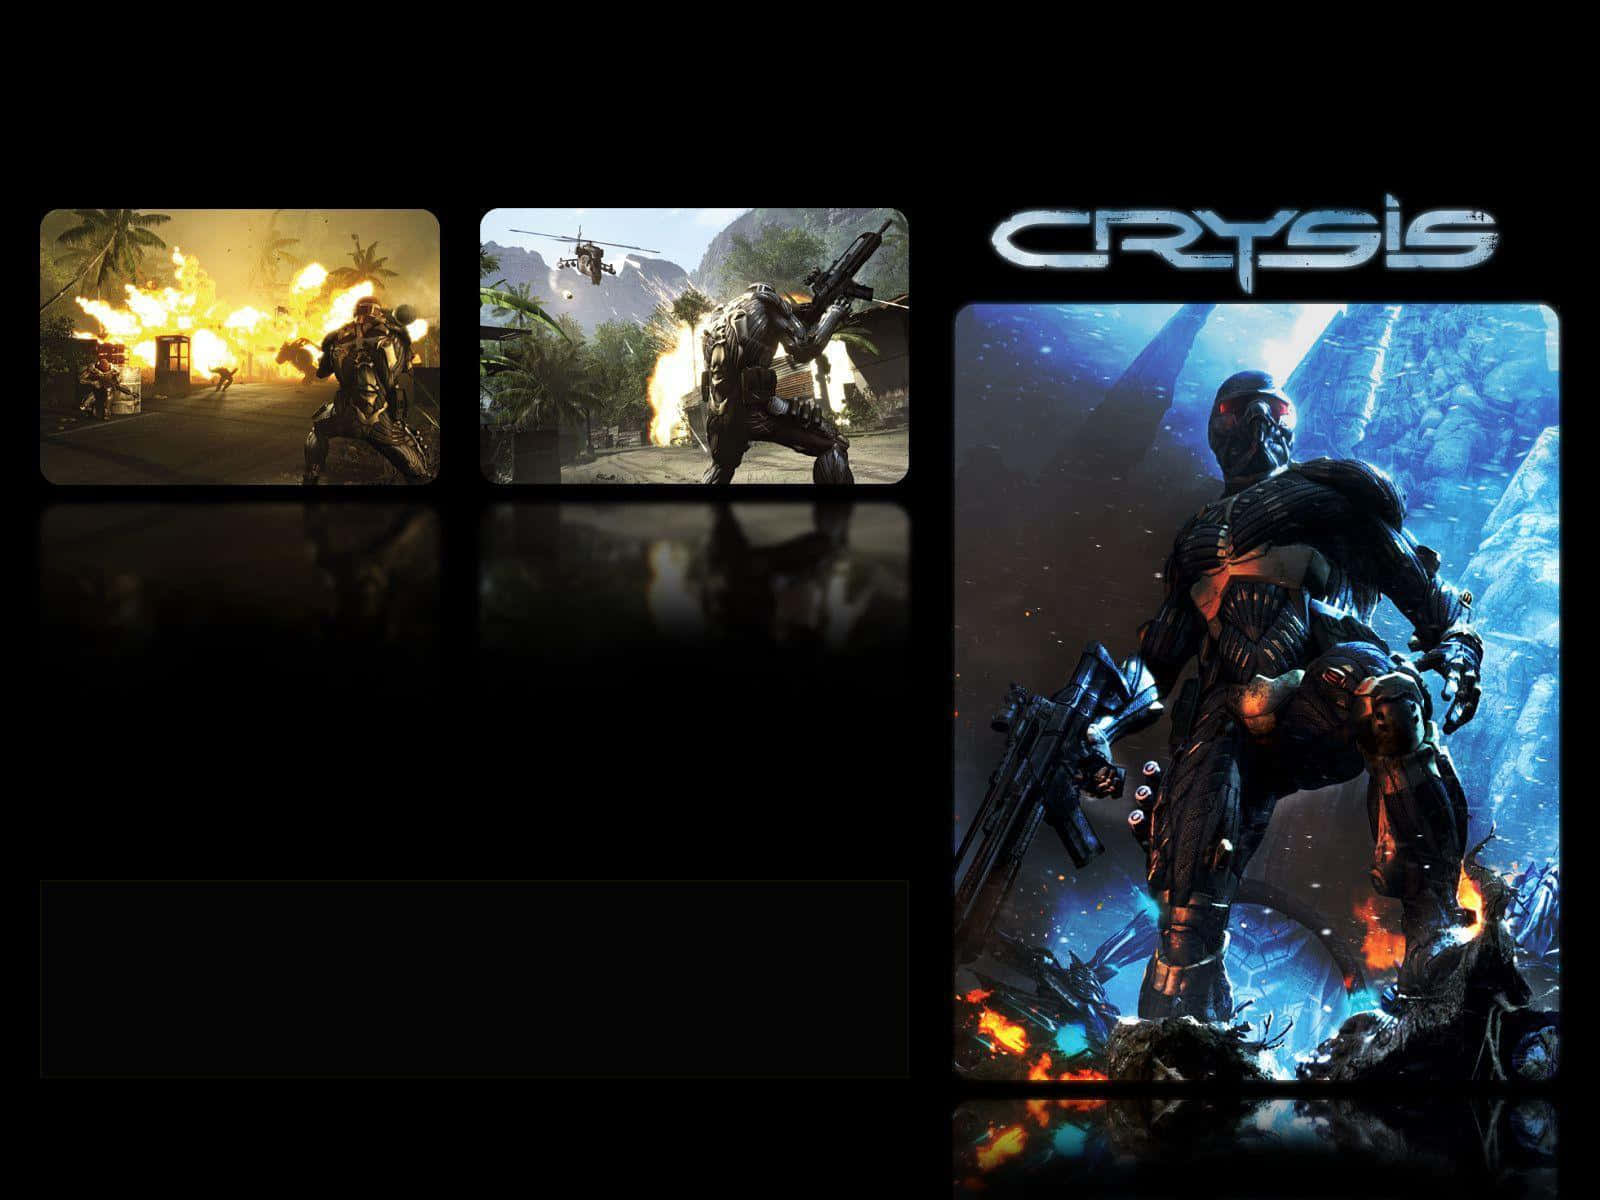 Game Stills Poster Design Crysis HD Wallpaper